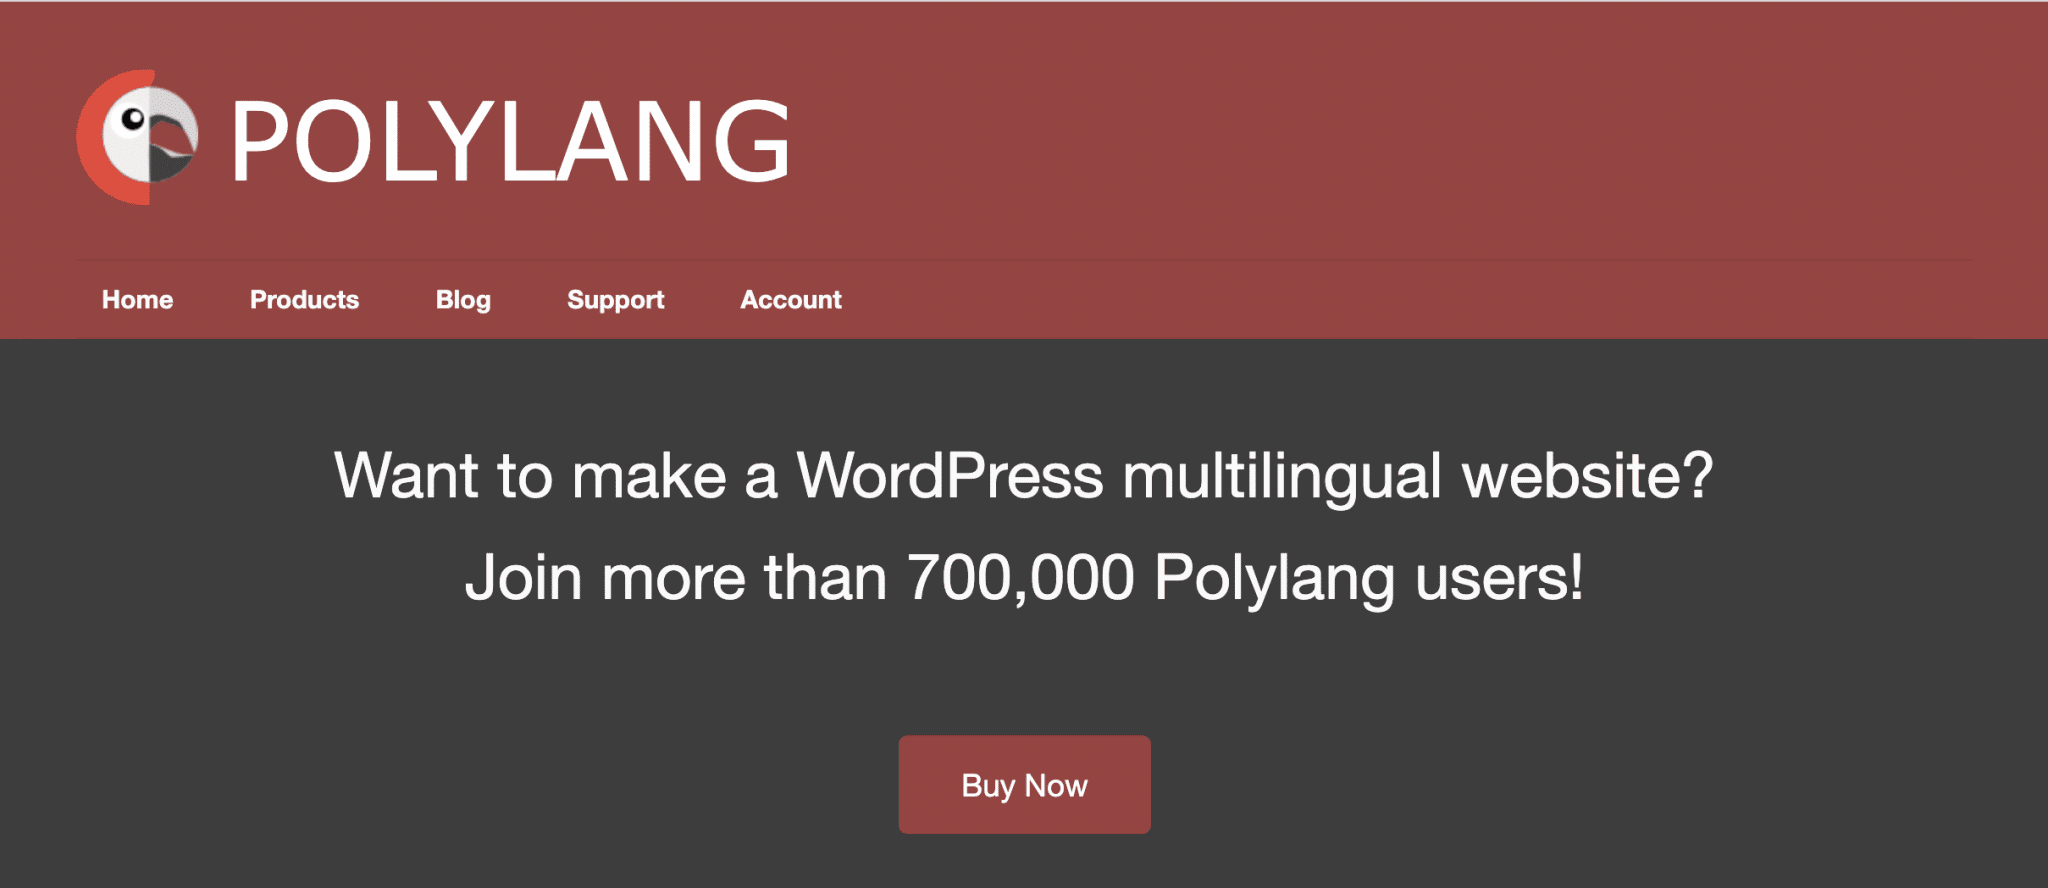 Polylang makes WordPress multilingual.